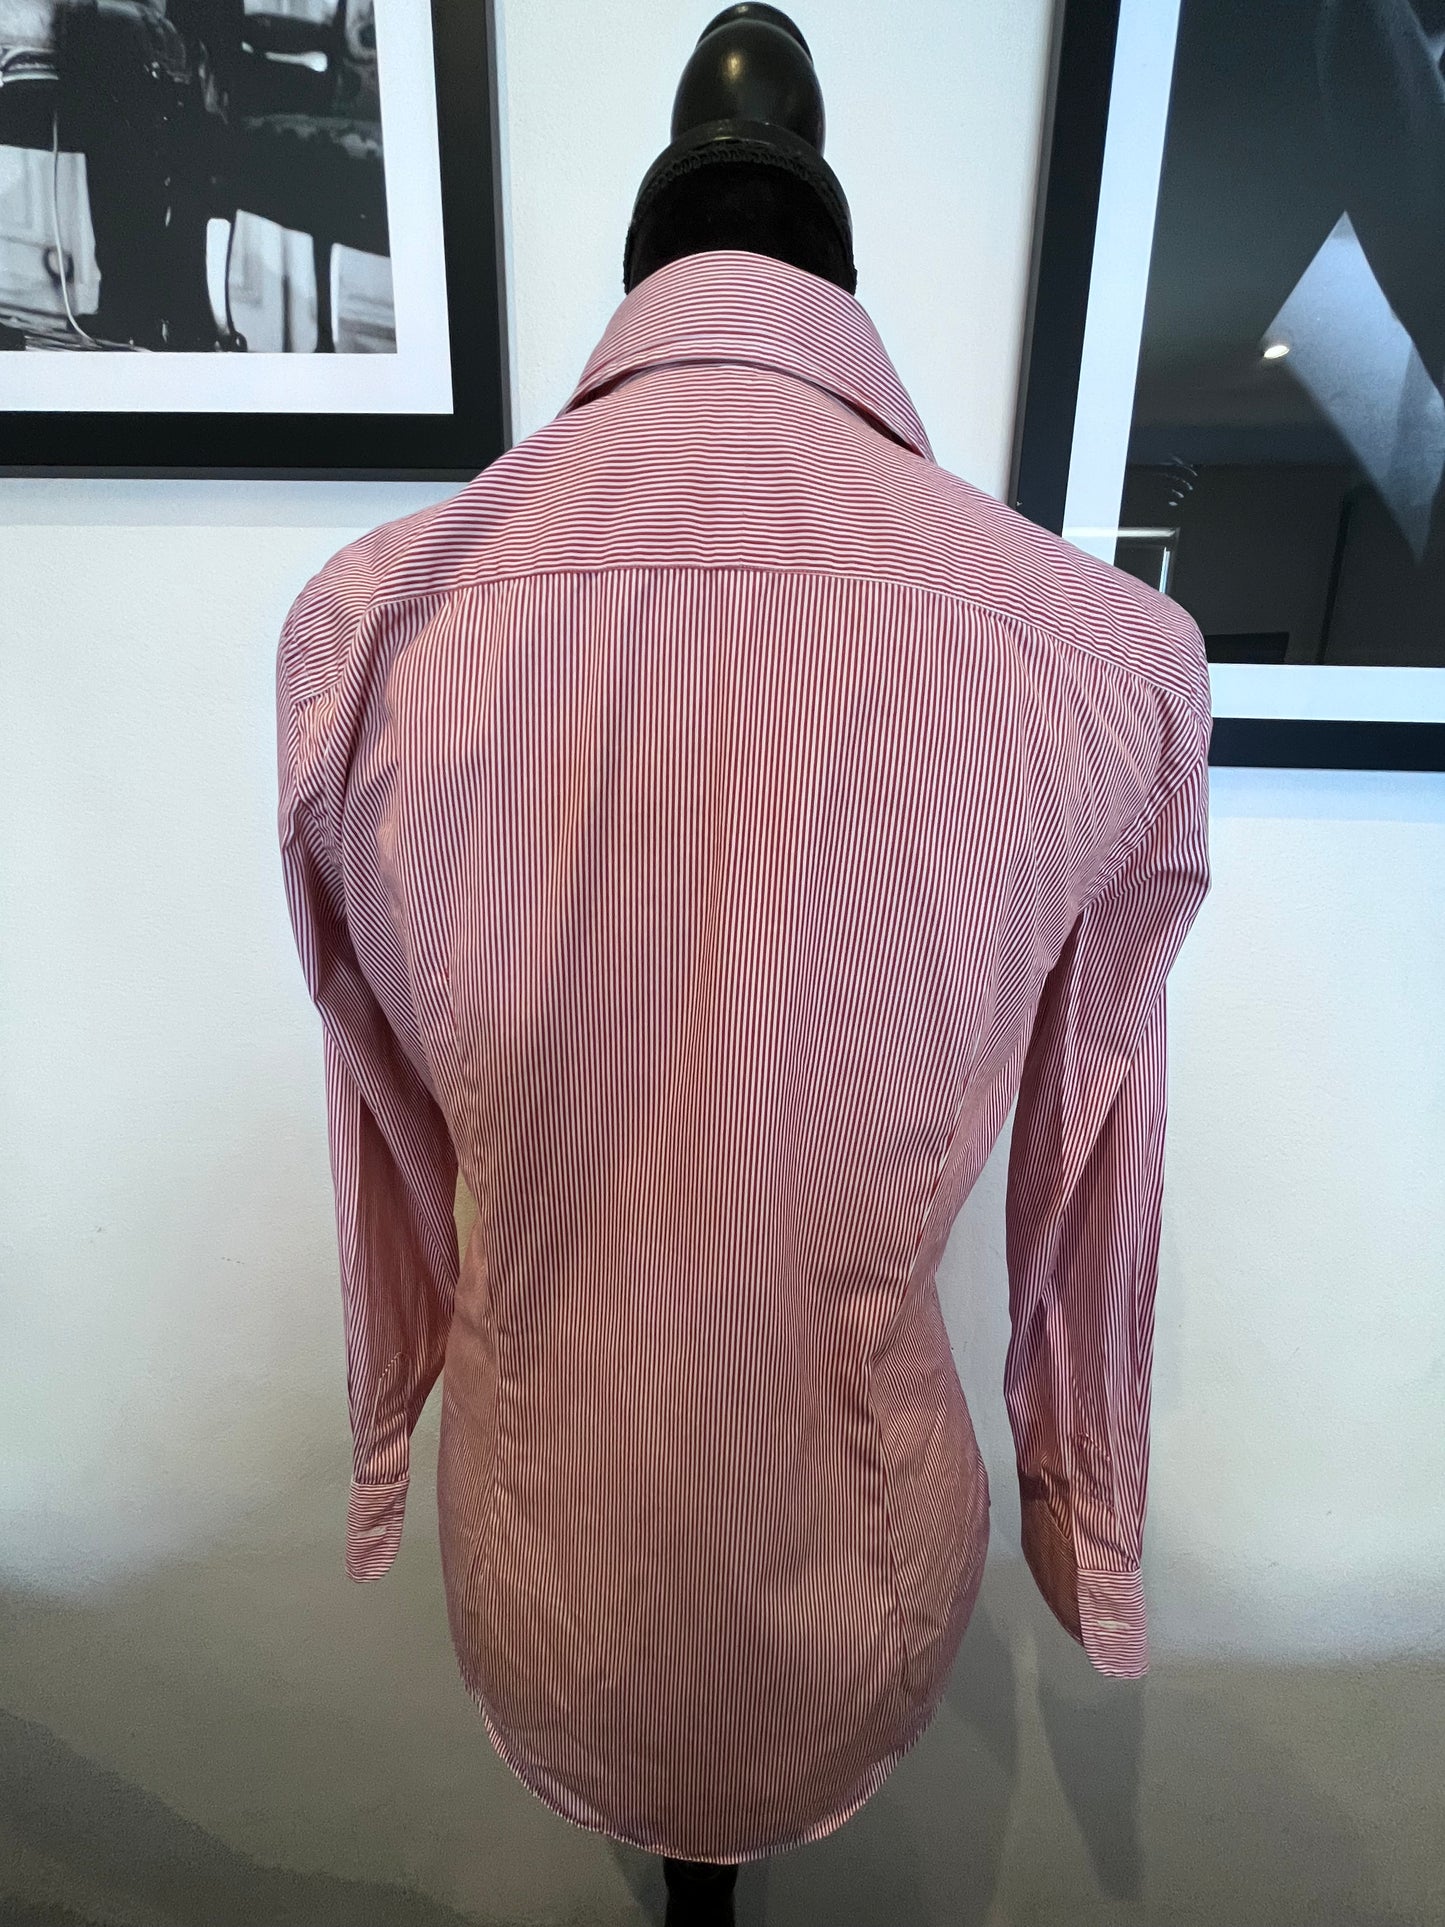 Ralph Lauren Women’s 100% Cotton Red White Stripe Shirt Slim Fit Size 8